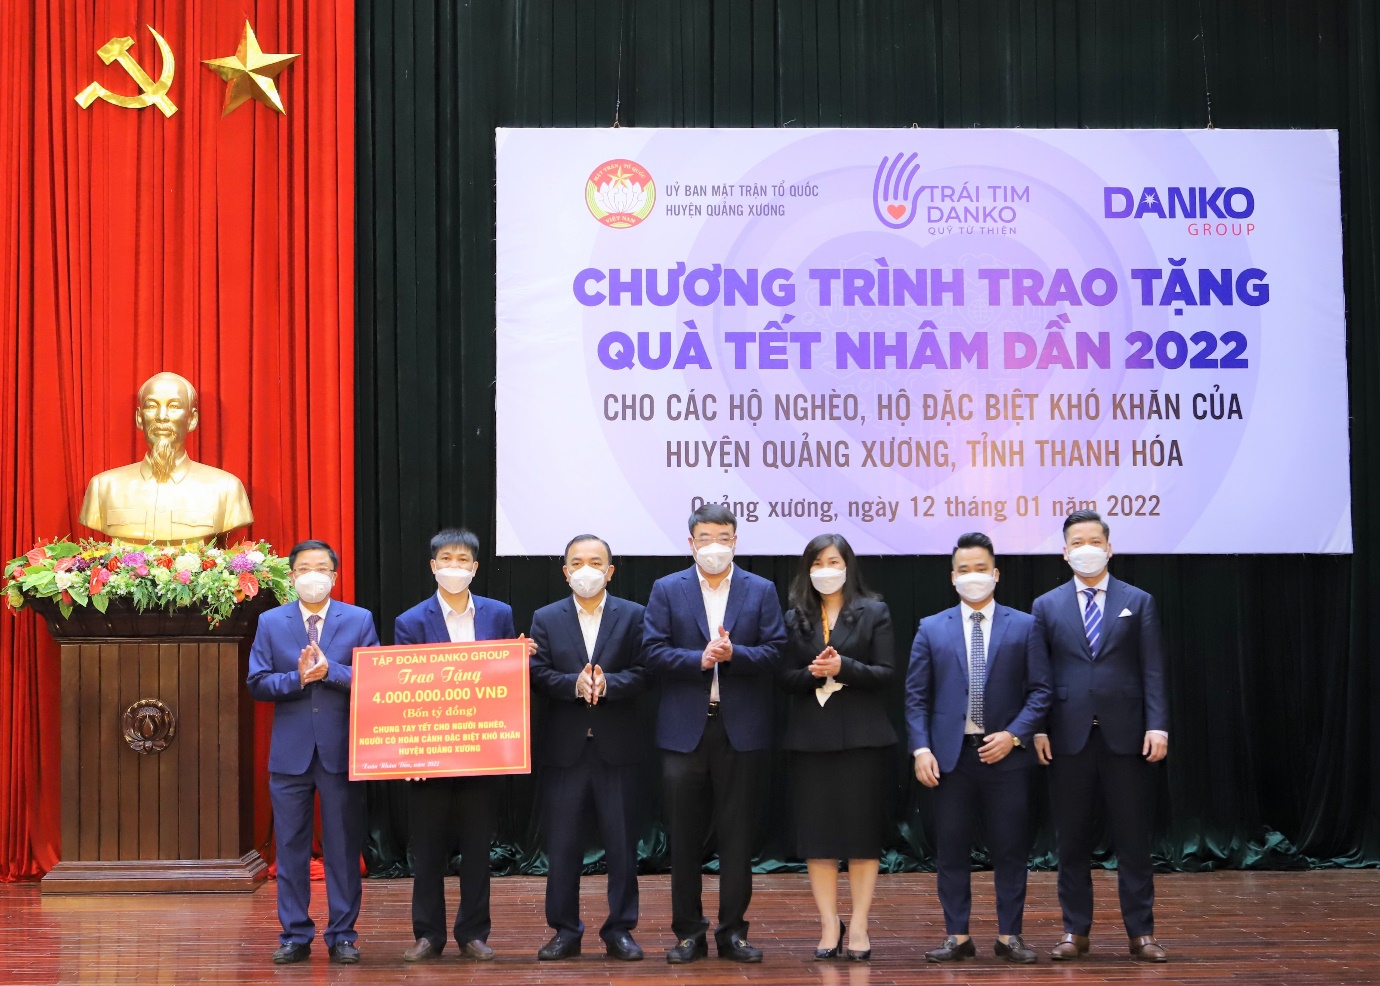 Danko Group trao tặng hơn 4 tỷ đồng quà Tết cho các hộ nghèo, đặc biệt khó khăn trên địa bàn huyện Quảng Xương - Ảnh 4.